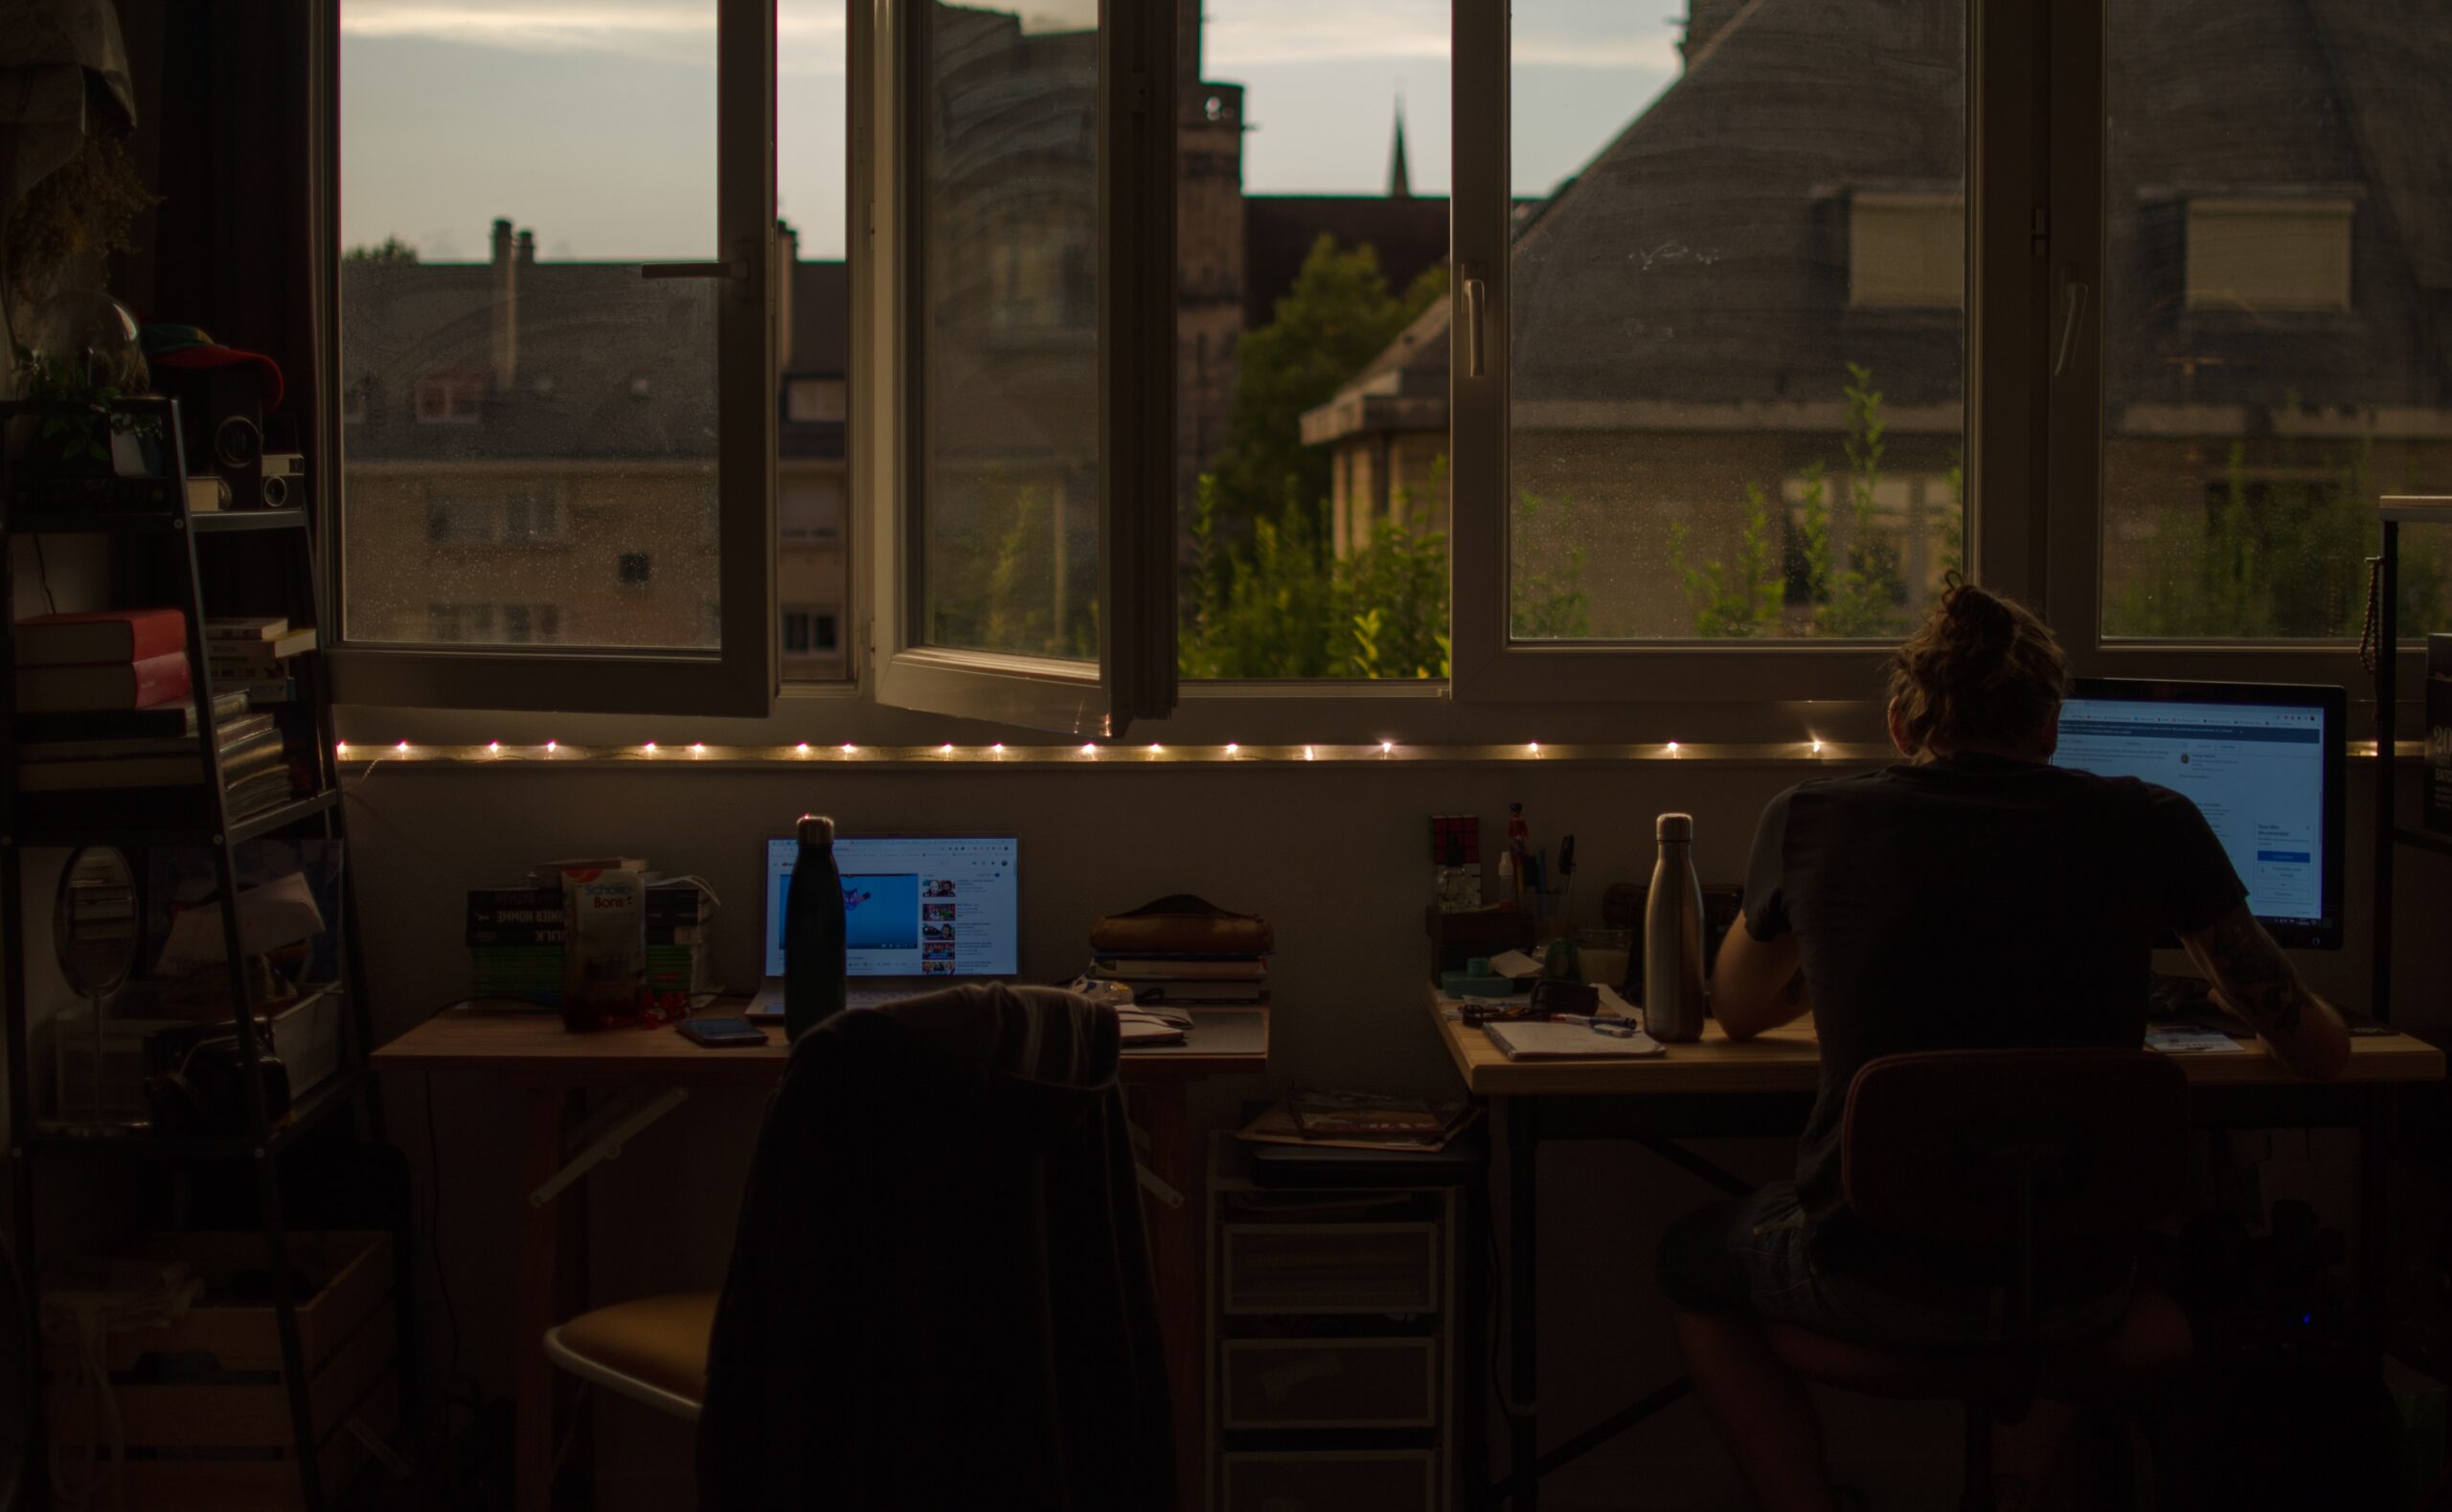 Två skrivbord framför öppet fönster med ljusslingor i fönstret och fin utsikt över hustak. En man sitter vid ett skrivbord och jobbar.